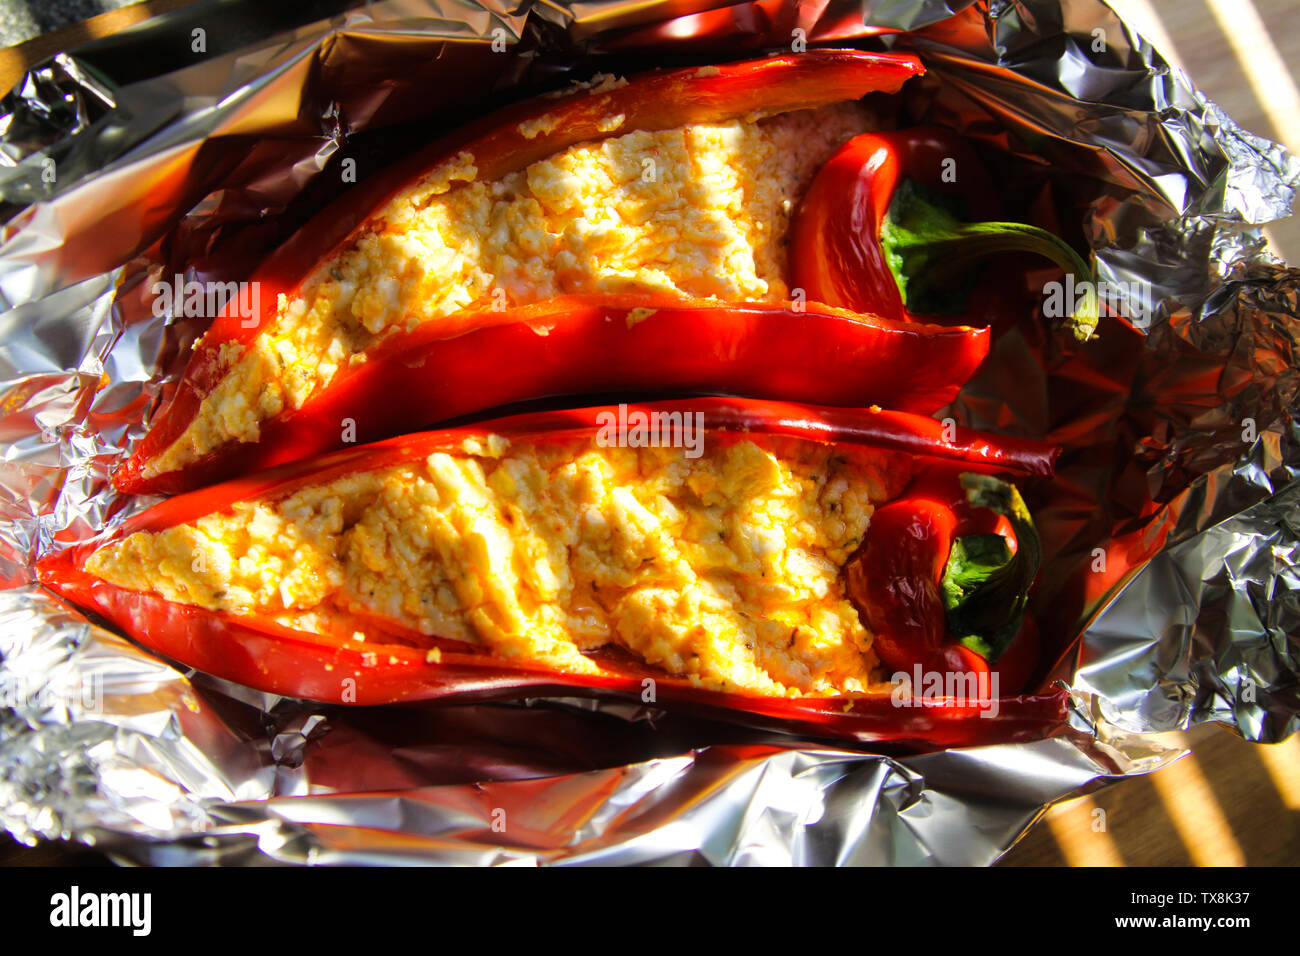 Nahaufnahme von gefüllte rote Paprika Paprika mit Schaf Feta Käse gewürzt mit pikanten Chili in Alufolie gegrillt Stockfoto